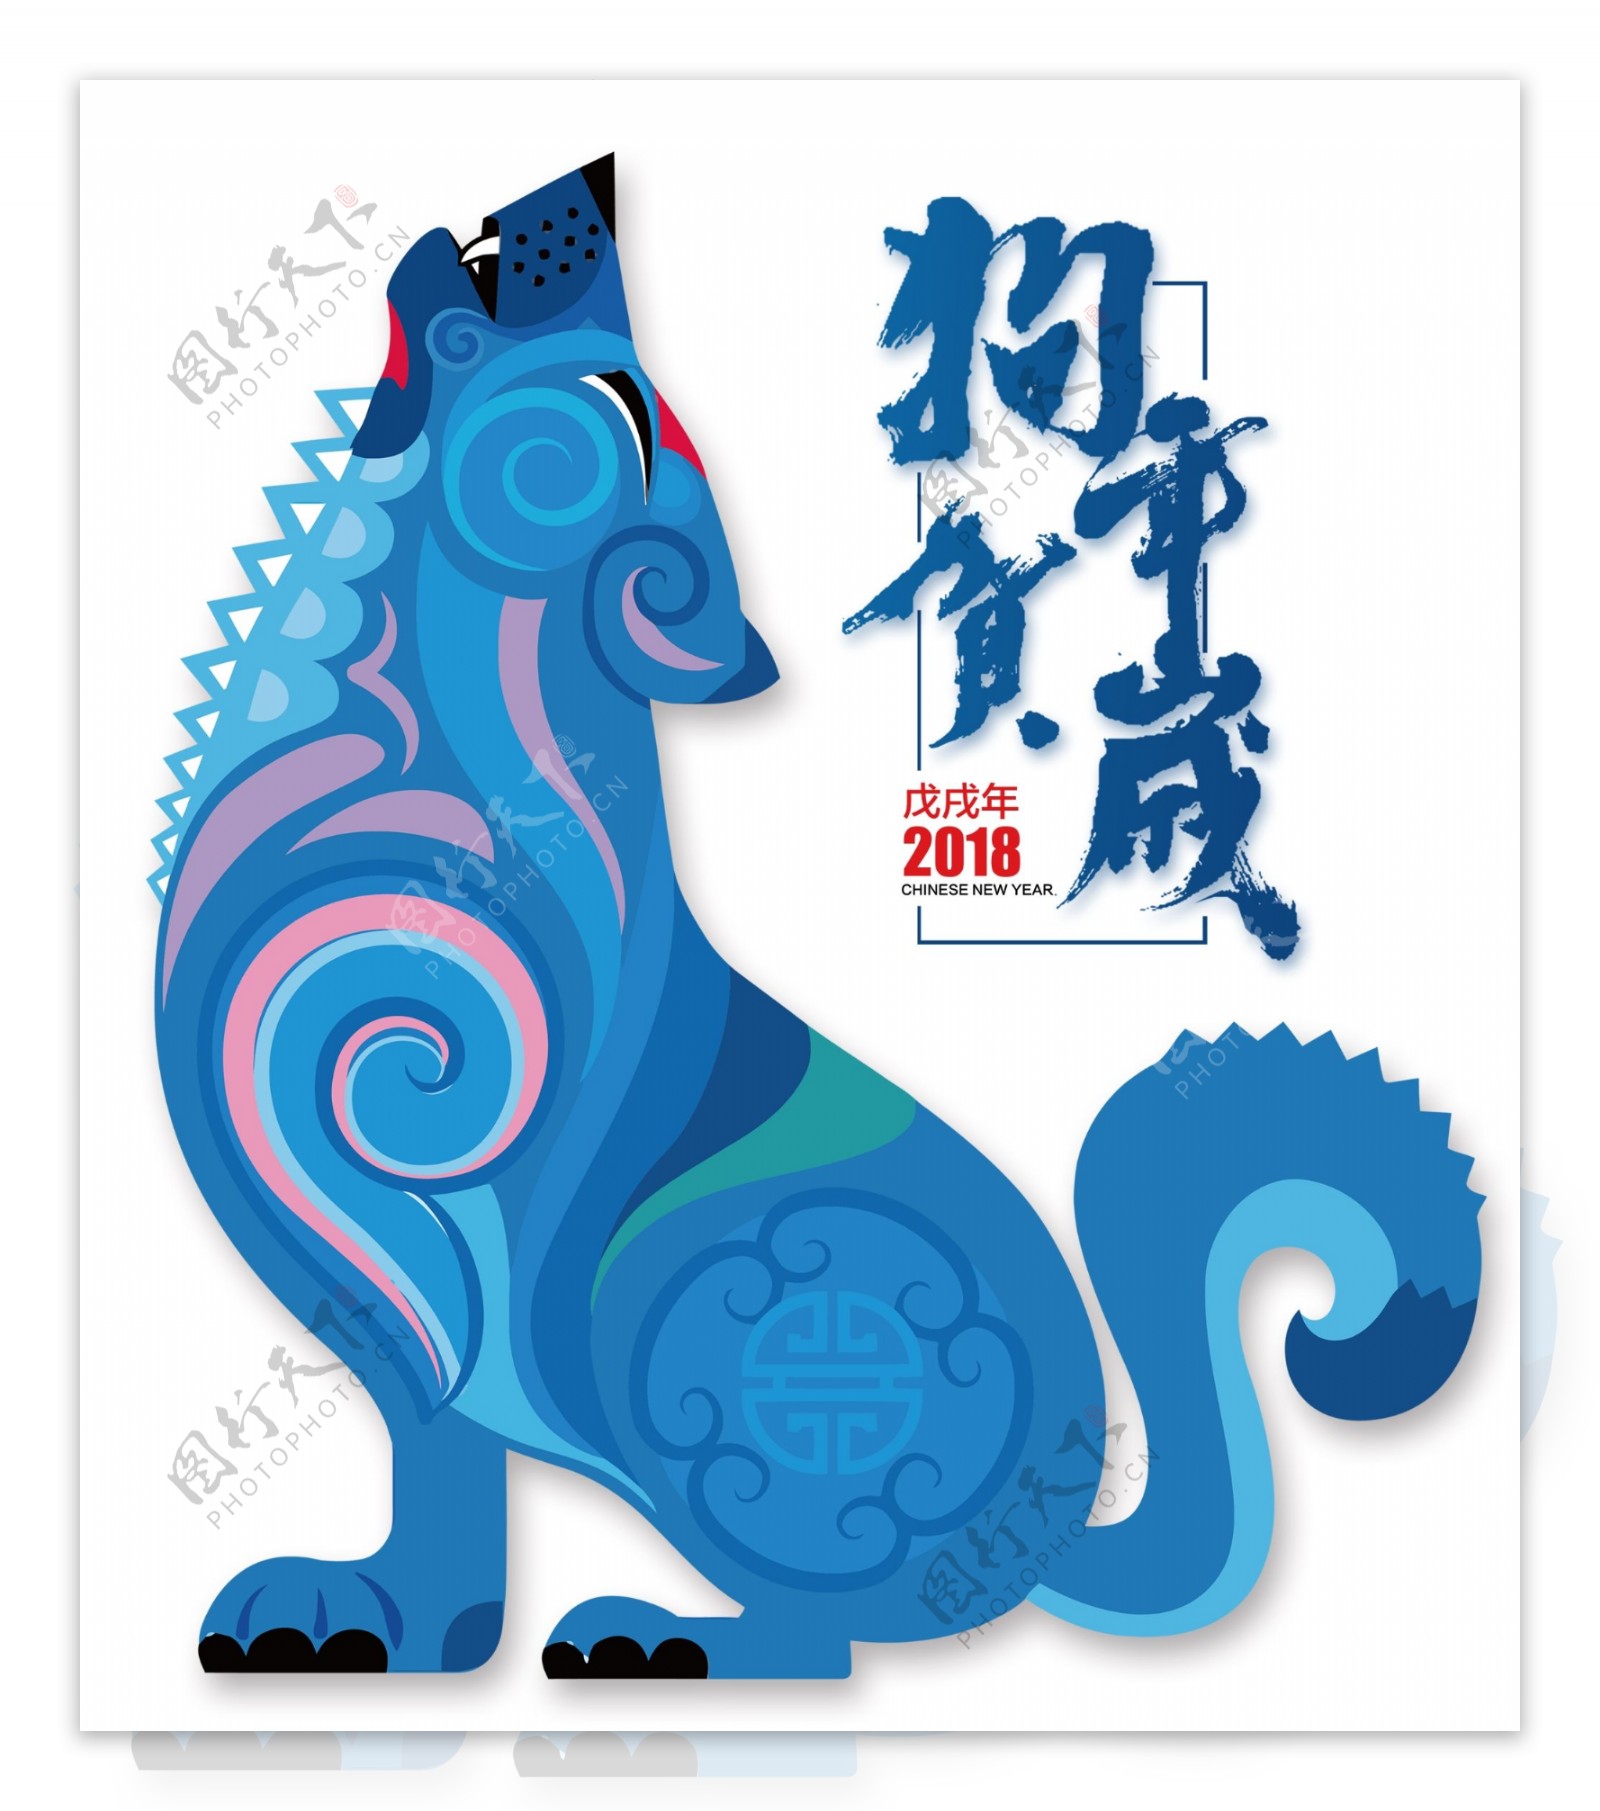 2018传统狗年贺岁海报设计